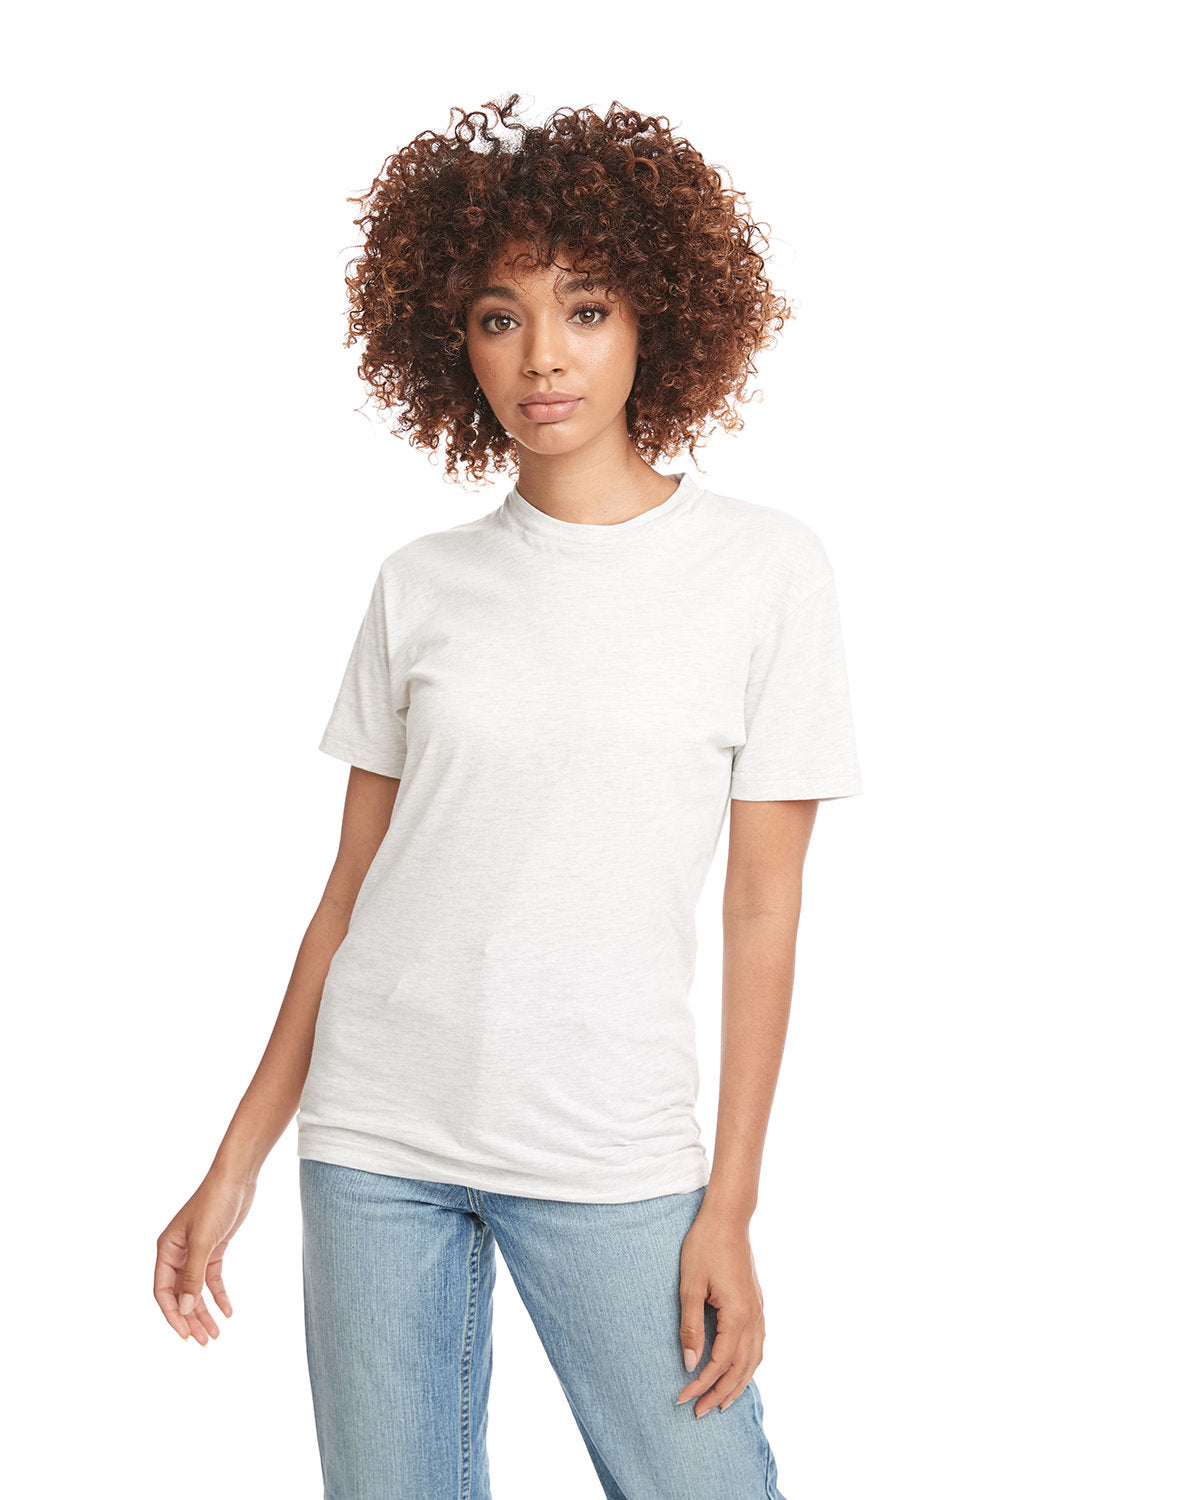 Next Level 3600 Unisex Cotton T Shirt - Black - Xs